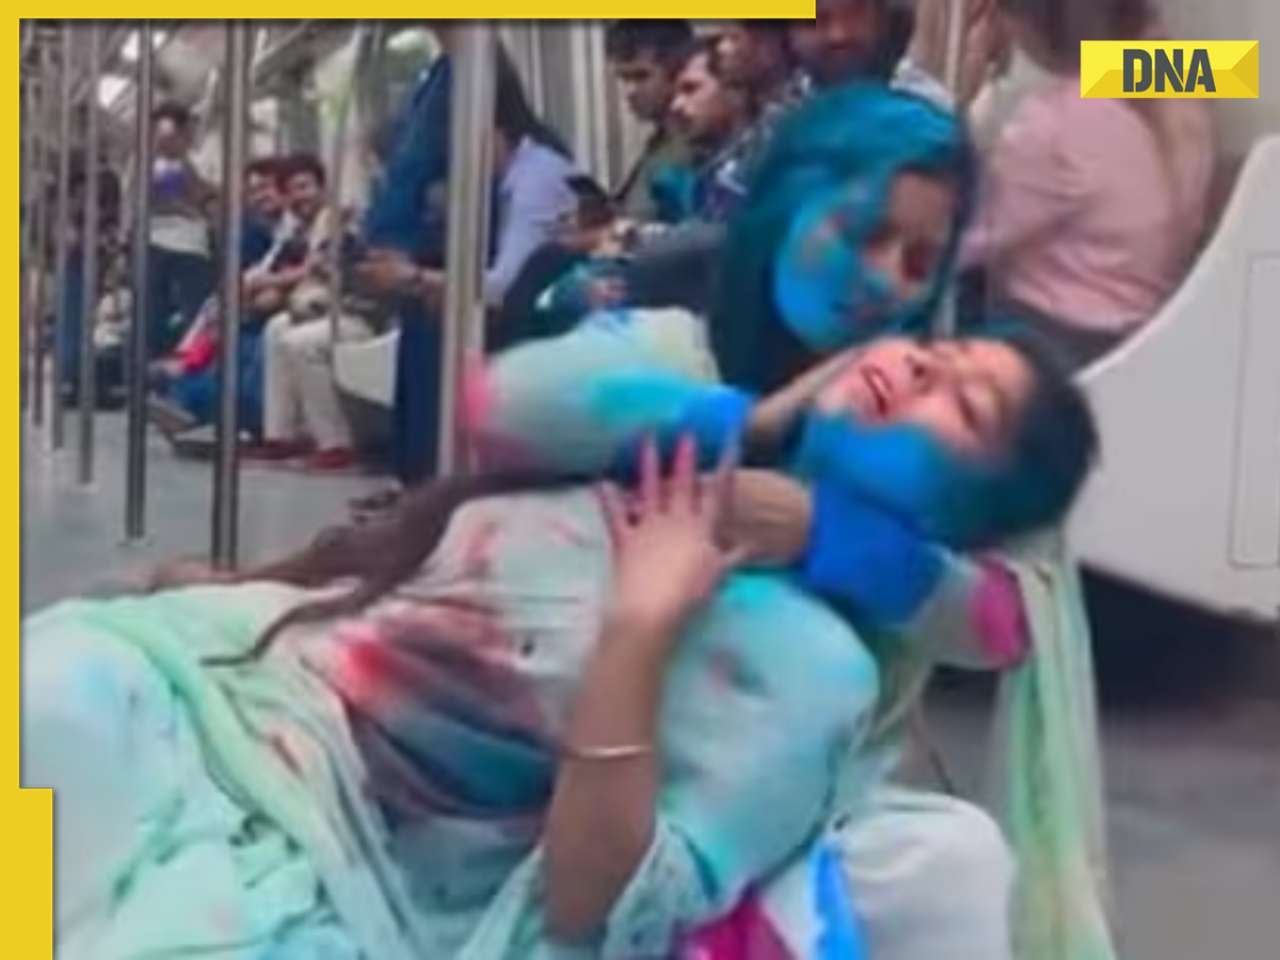 Watch: 2 women 'play' Holi inside Delhi Metro in viral video, DMRC reacts